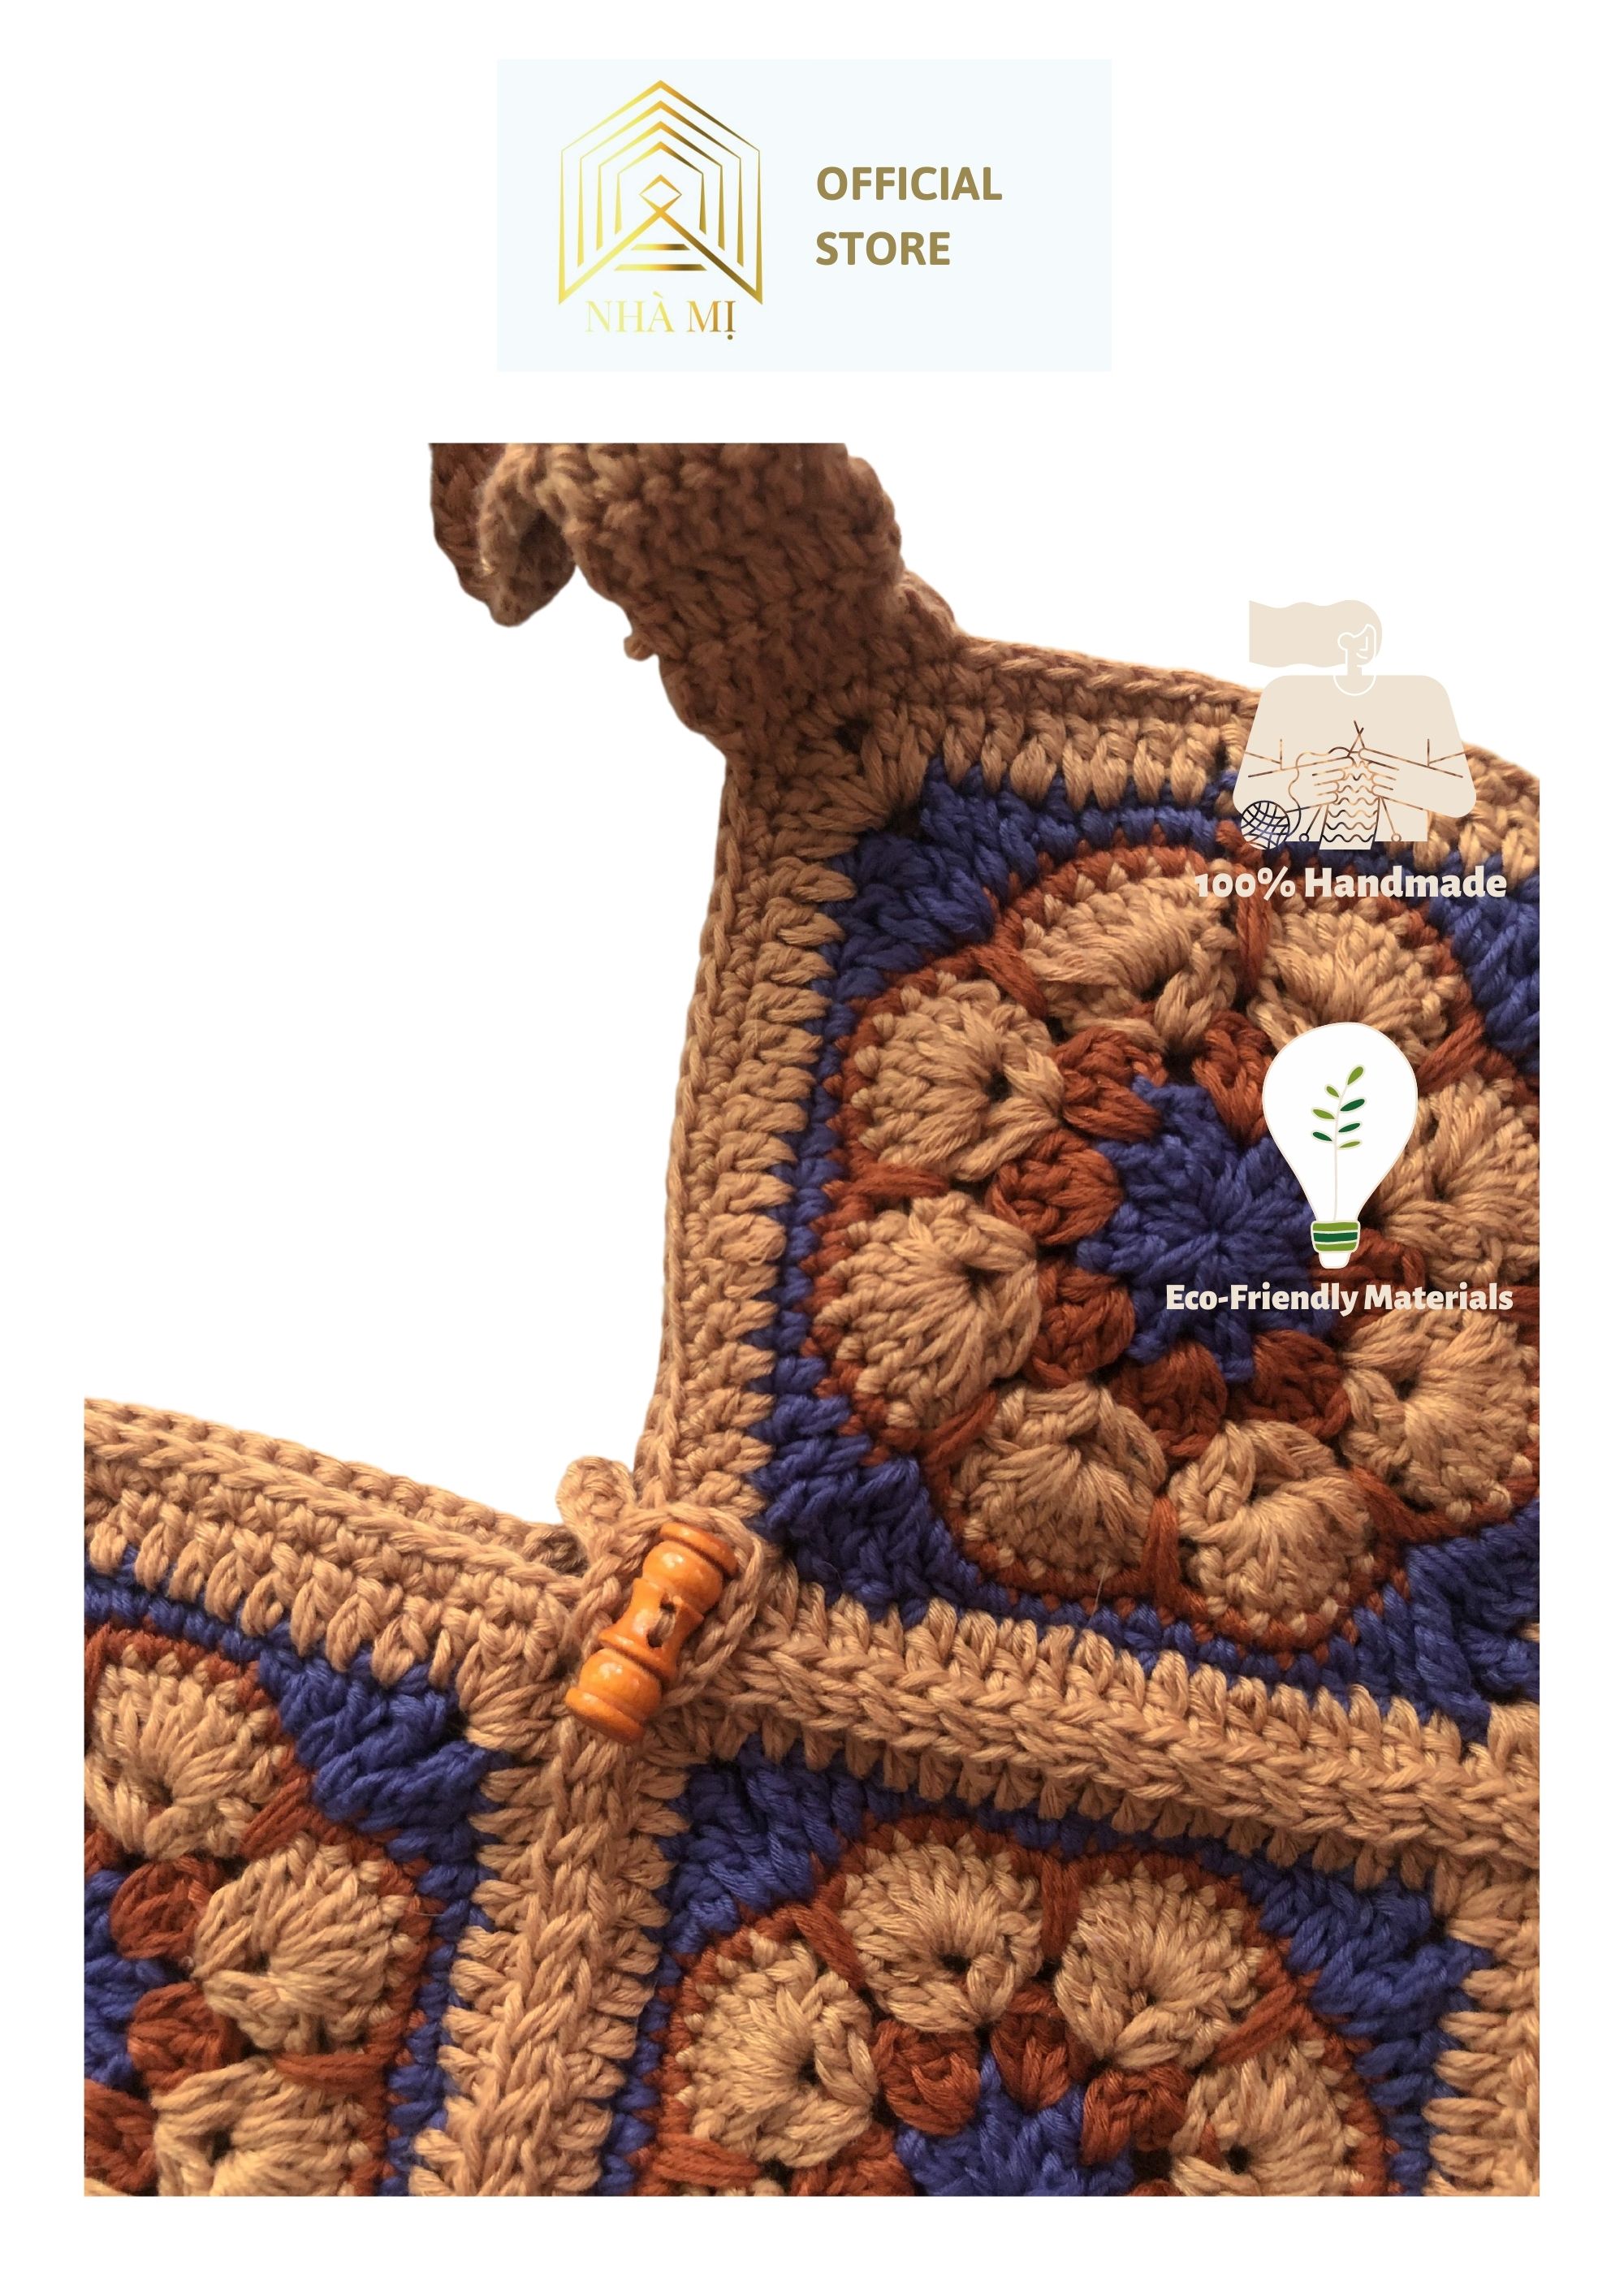 NHÀ MỊ - Túi Xách handmade Len Đan Móc Thủ Công - African Flower Crochet Bag